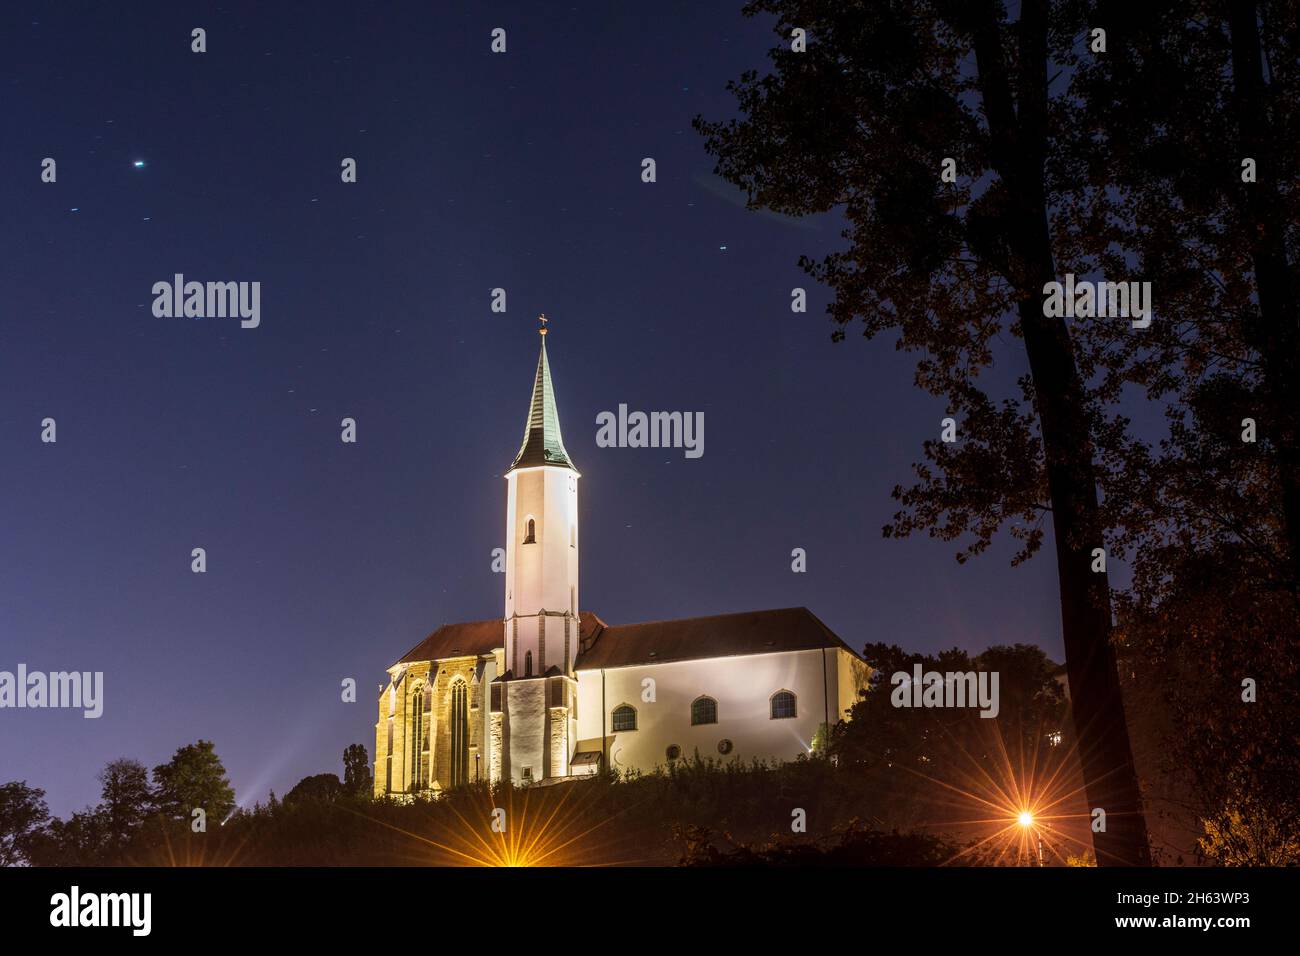 klosterneuburg,church martinskirche in wienerwald,vienna woods,niederösterreich,lower austria,austria Stock Photo